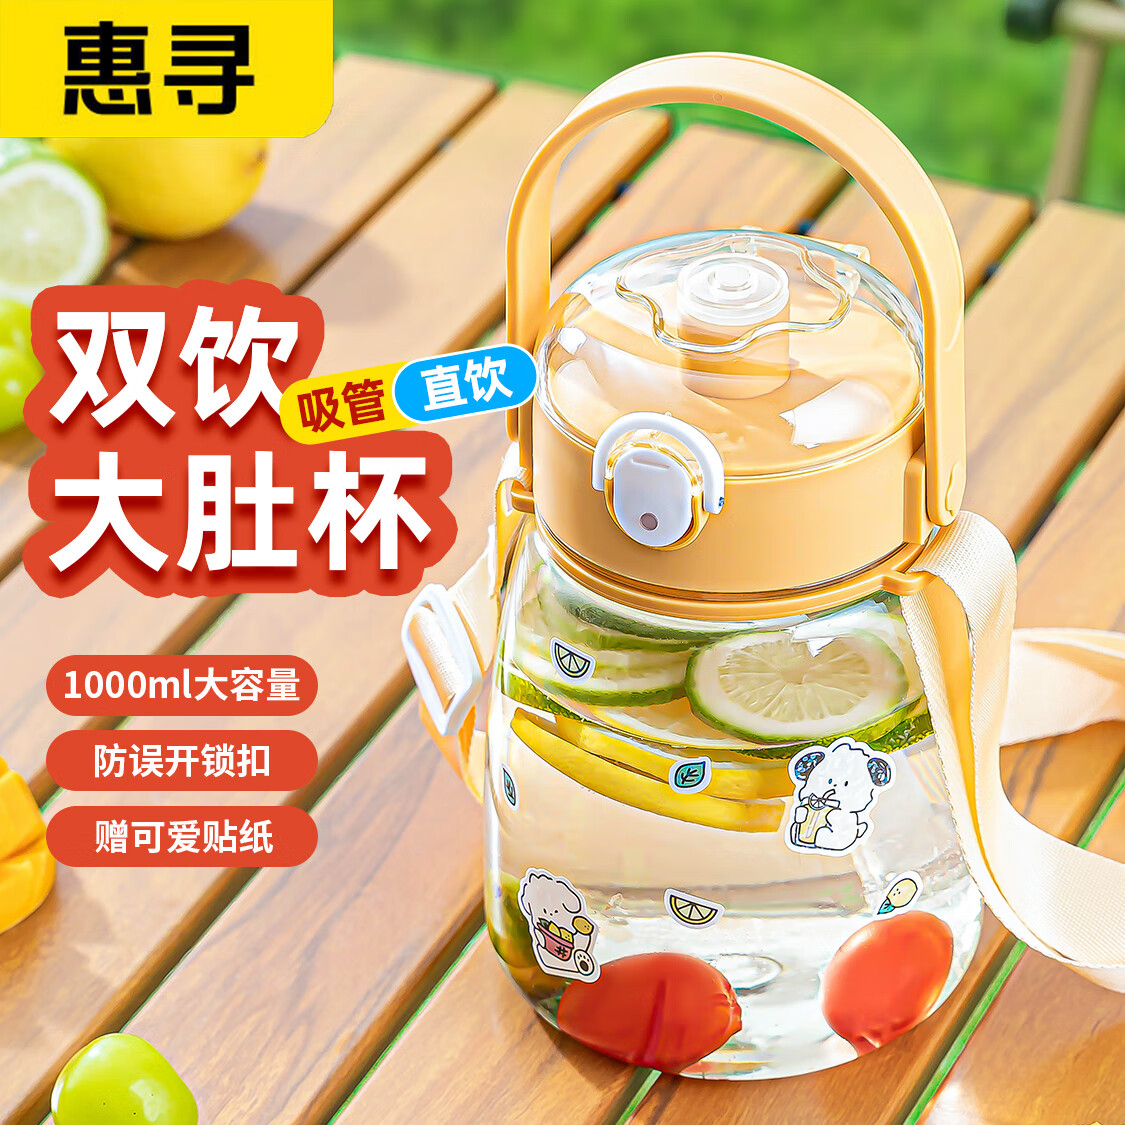 惠寻 大容量塑料大肚水杯 柠檬黄1L 12元